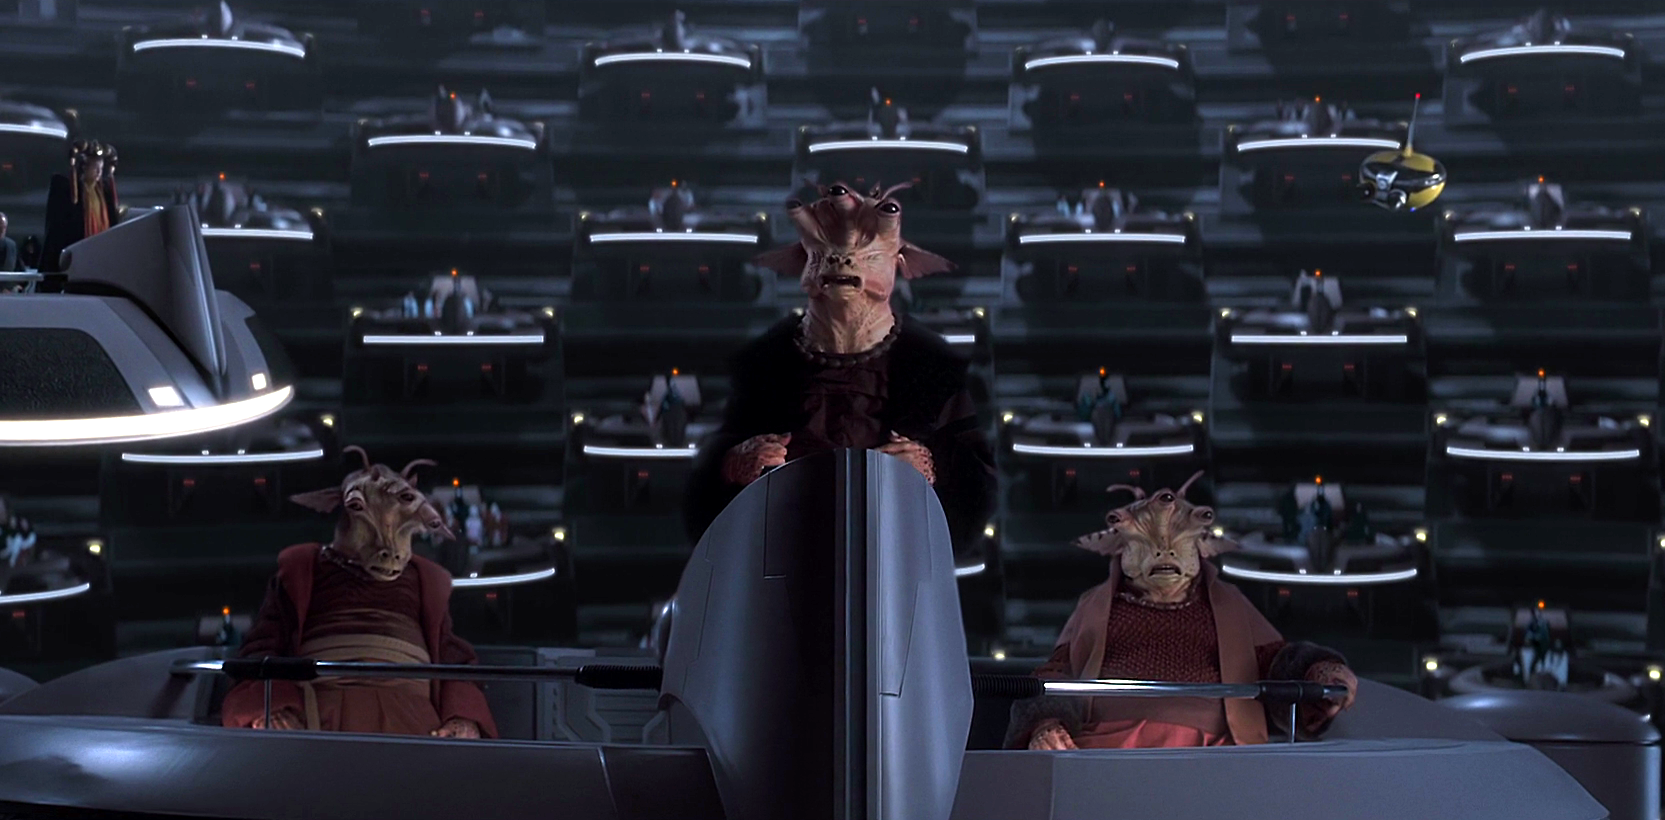 Em primeiro plano, vemos três alienígenas de três olhos da raça Gran. Eles estão em uma plataforma flutuante do Senado Galáctico, com trajes de gala. O alienígena do meio está de pé.